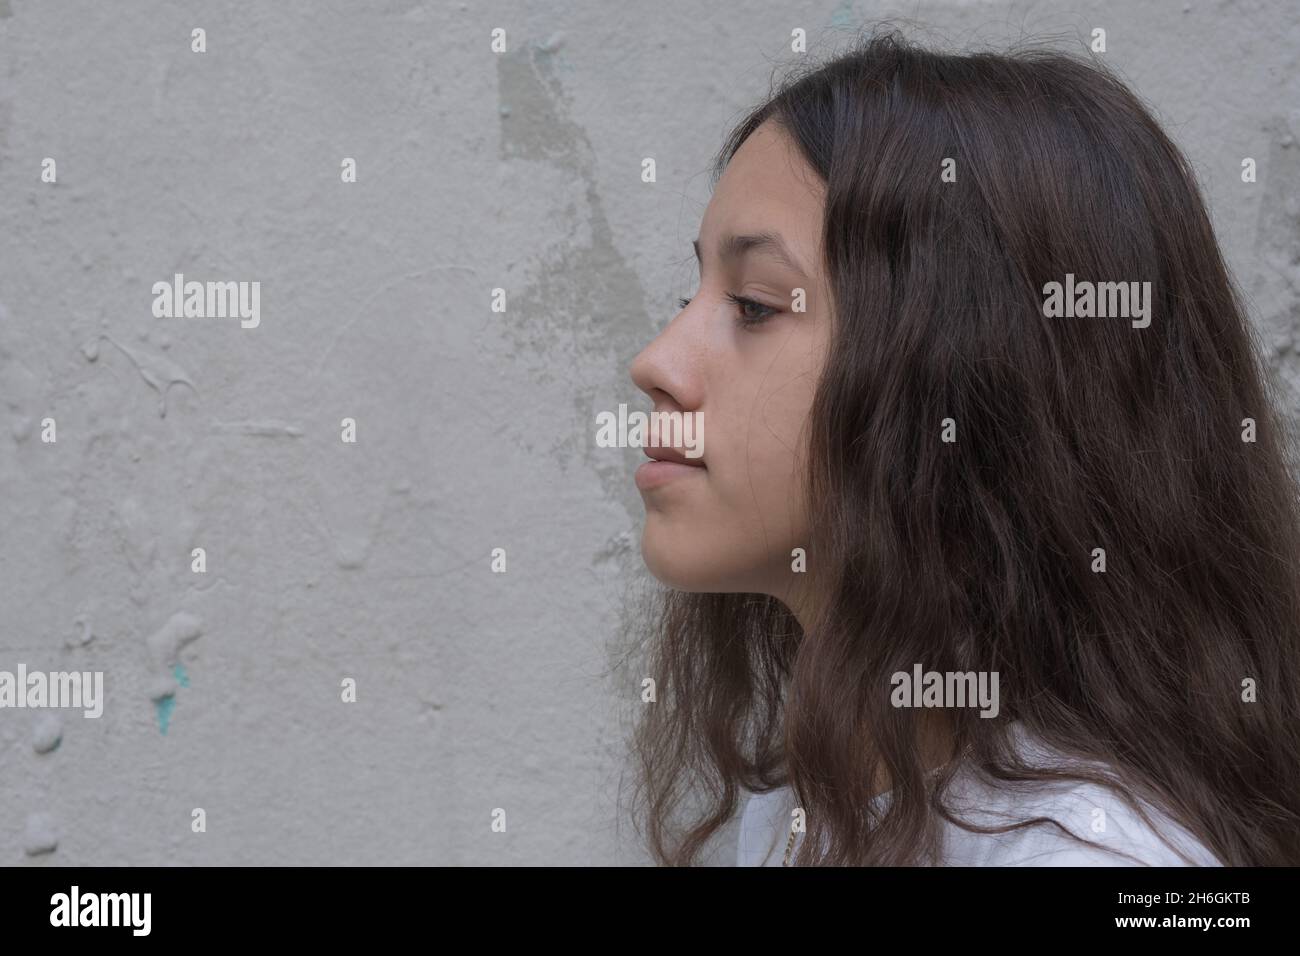 Nahaufnahme Profil von einem Teenager-Mädchen mit langen braunen Haaren freut sich mit einem nachdenklichen Ausdruck. Hintergrund der grauen Wand, kopieren Sie freien Platz für Text. Stockfoto